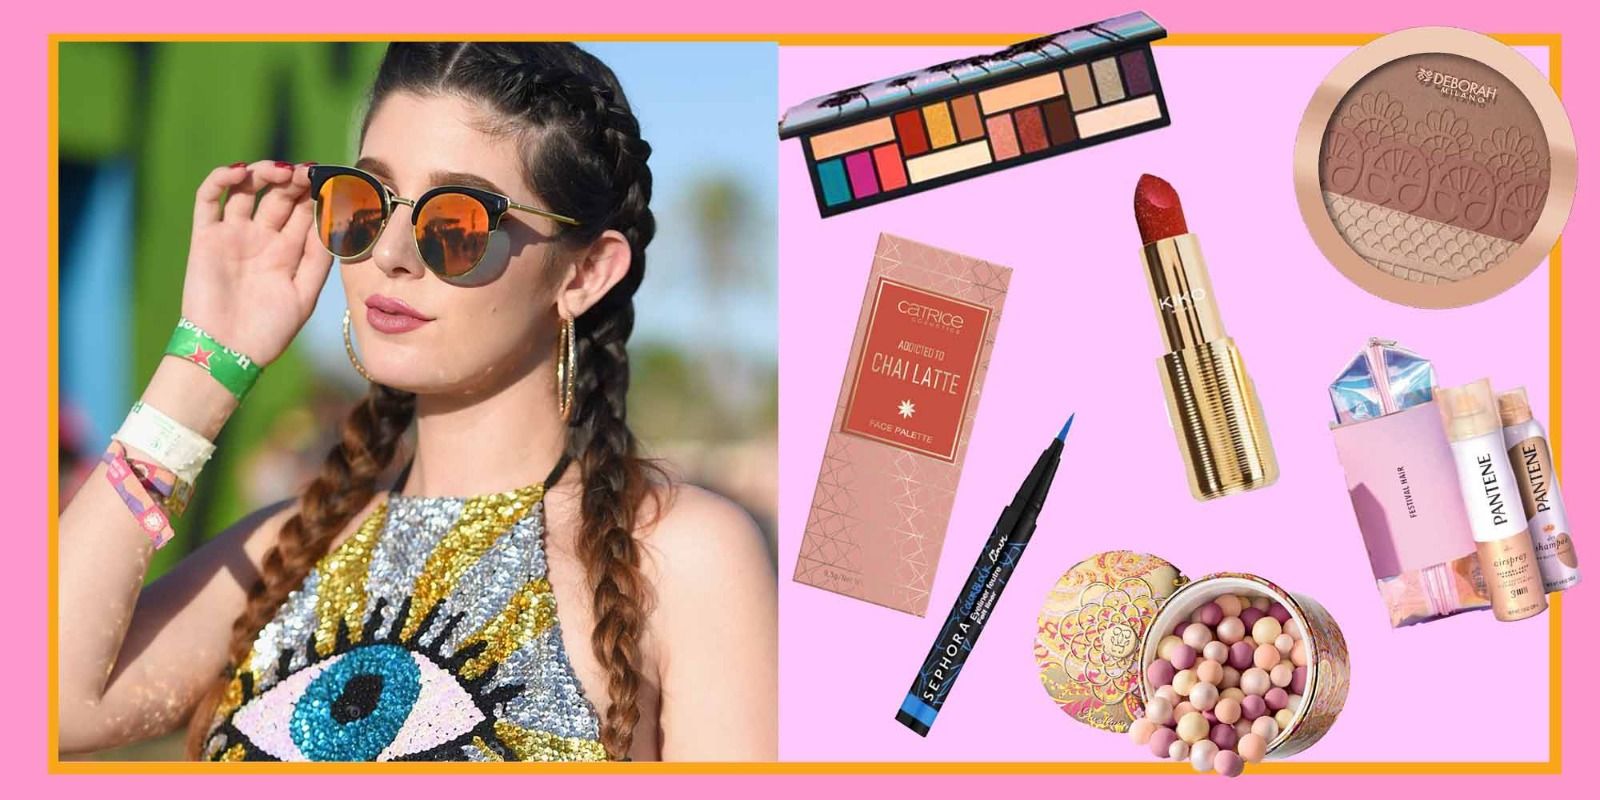 Make-up Coachella: come ricreare e prendere spunto dai look più glam?